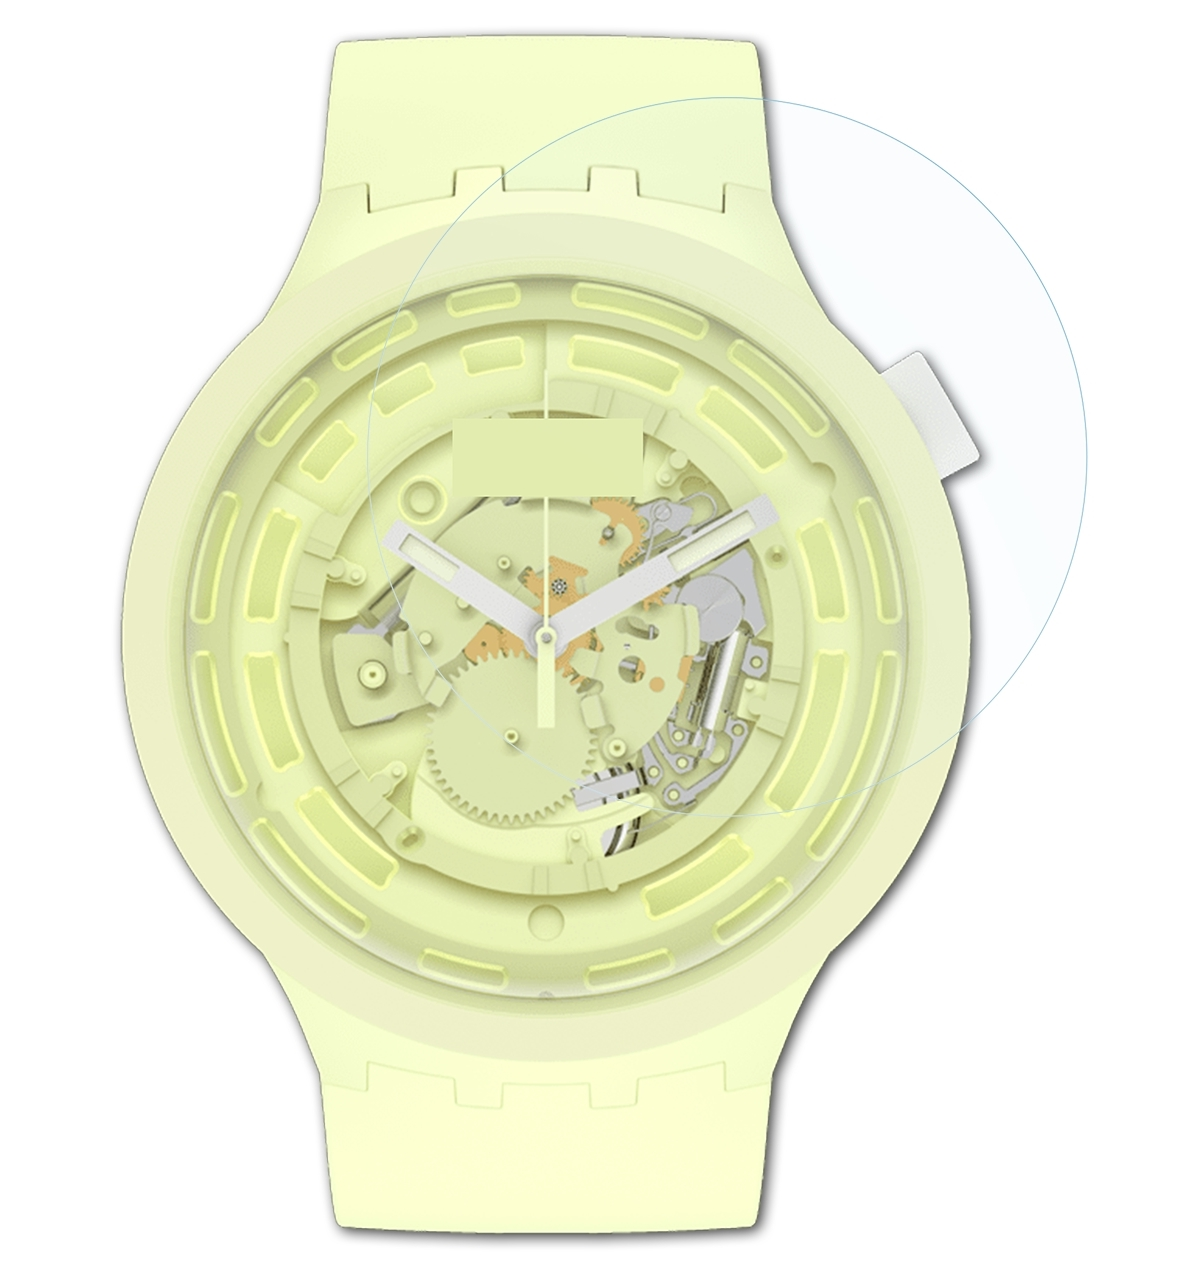 3x Swatch ATFOLIX C-Lime) Displayschutz(für FX-Clear